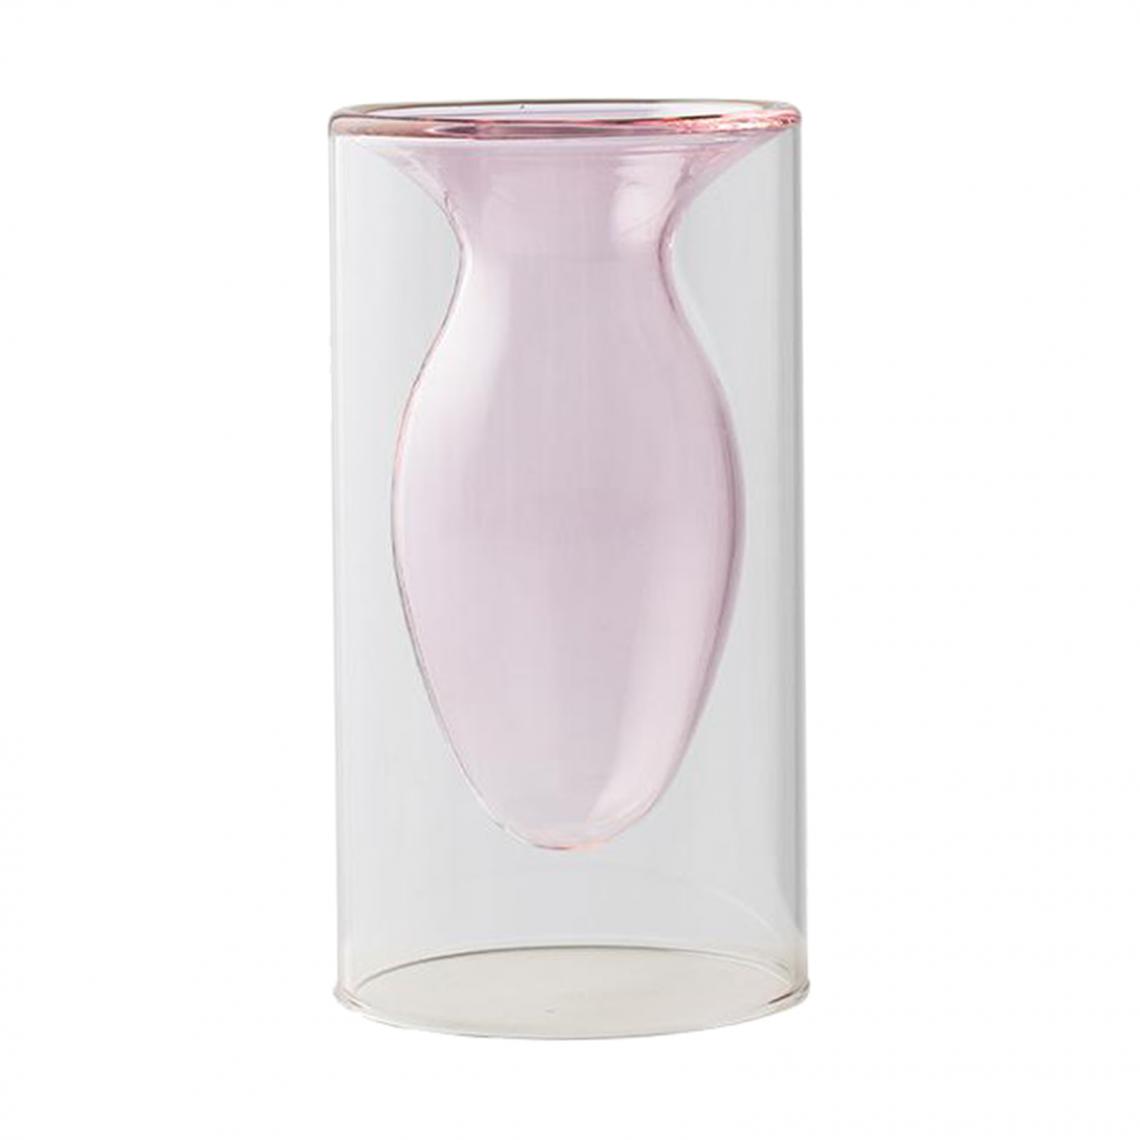 marque generique - Moderne Bonsaï Fleur Vase Nouveauté Planteur Pot Maison Bureau Chambre Décoration Rose - Vases